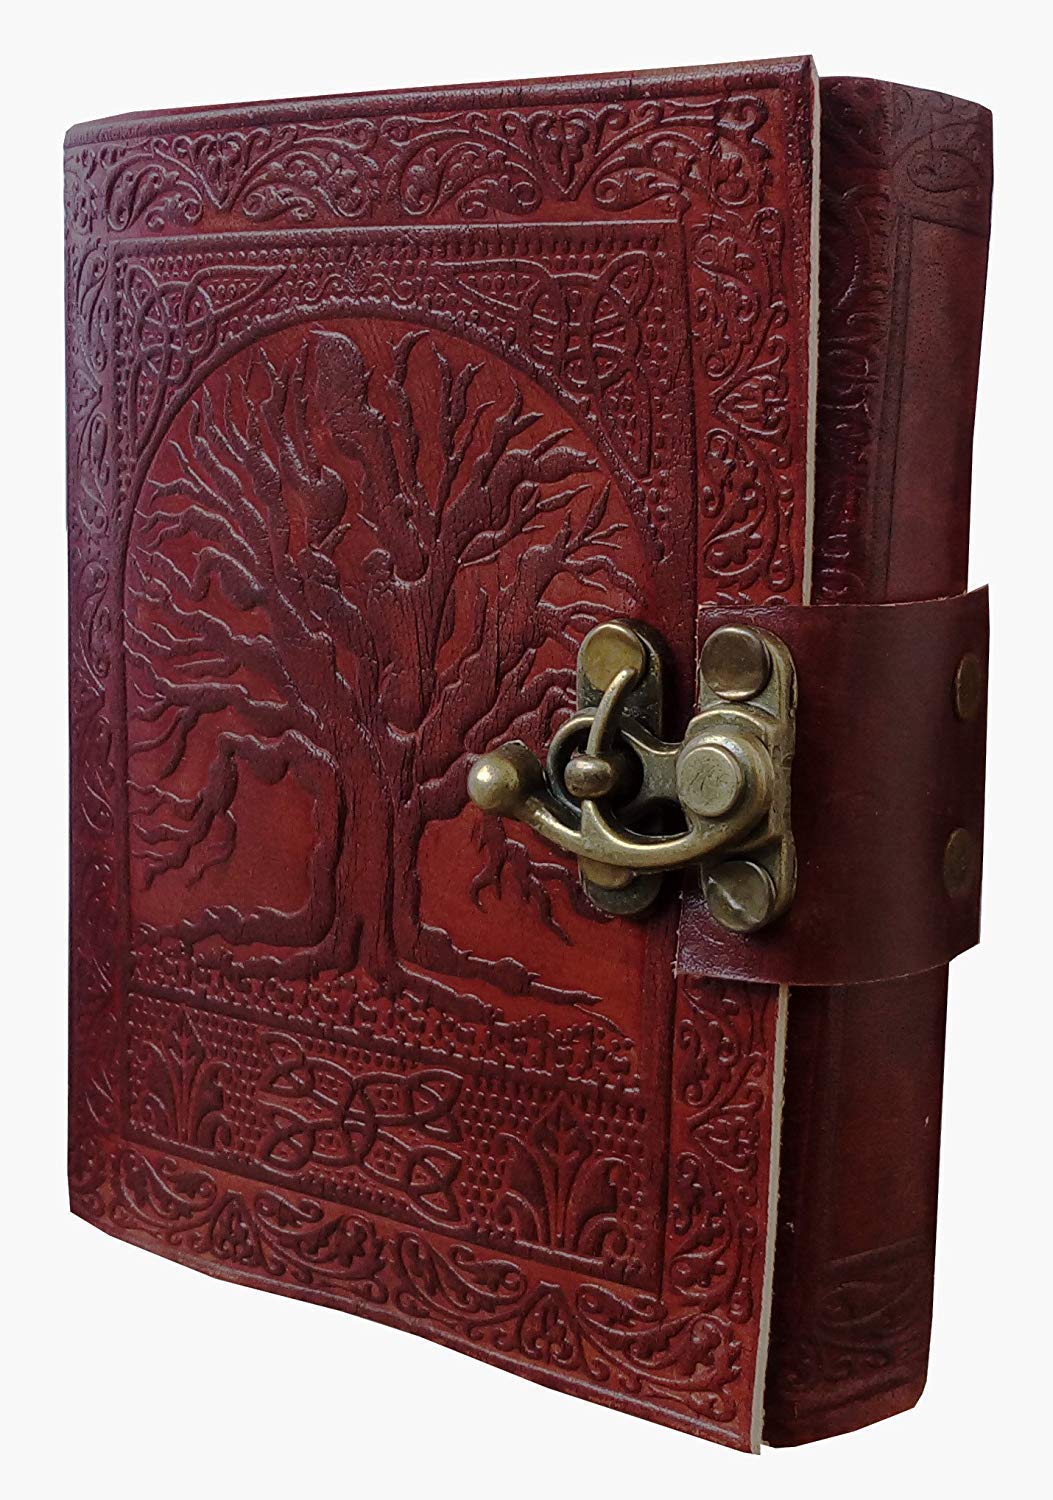 OVERDOSE Tree Journal Diary Notebook Handgemachtes Leder Journal Reisetagebuch Schreib journal Organizer planer Tagebuch Size 5x7 inches | 12x17 cm